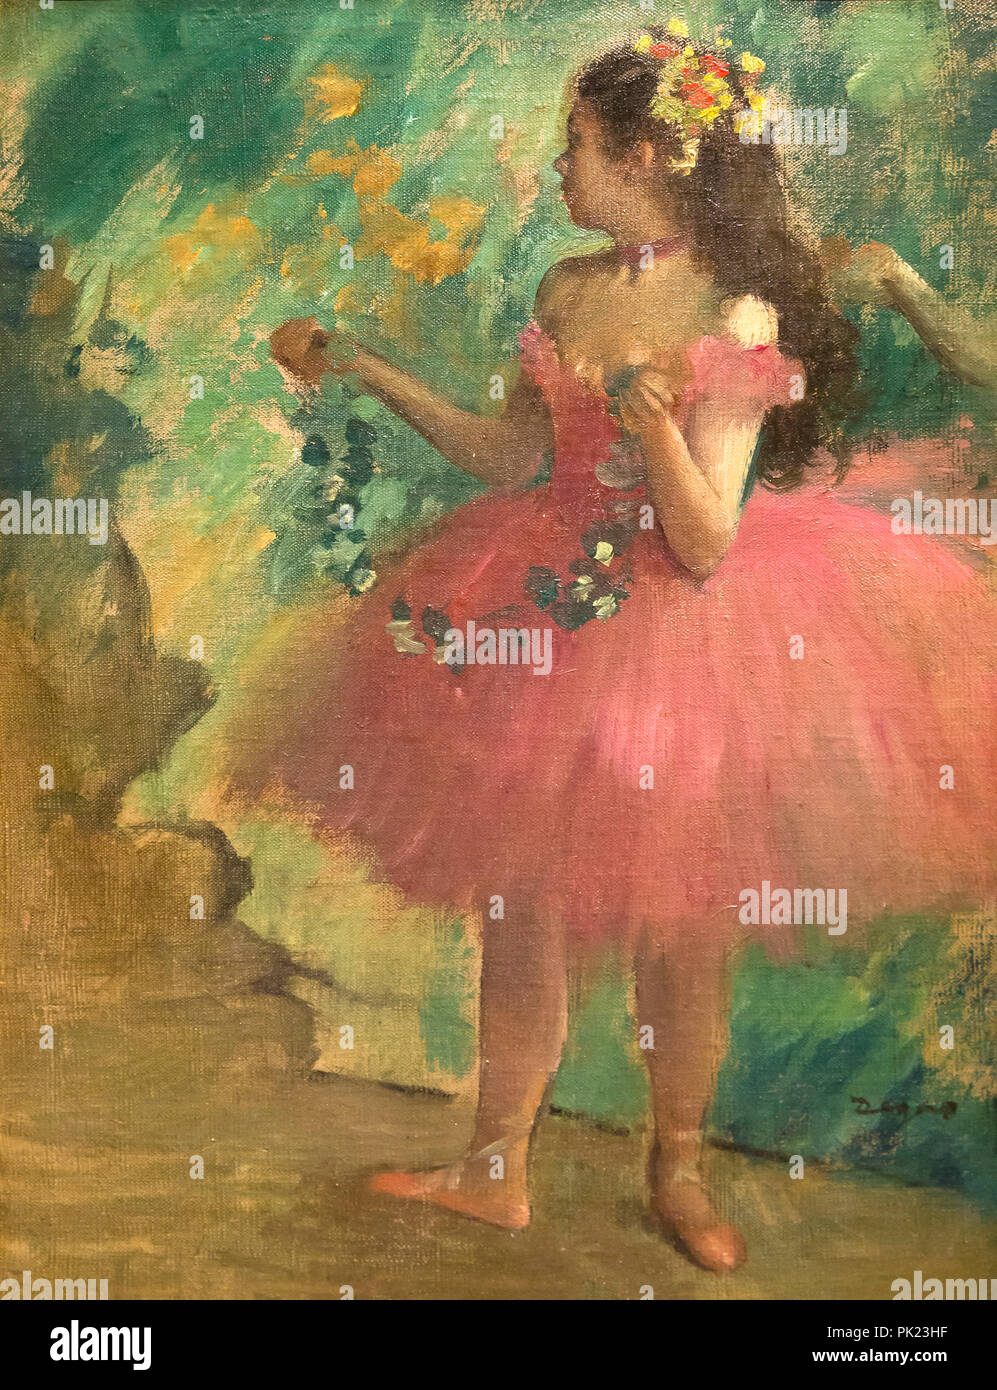 Rosa ballerina immagini e fotografie stock ad alta risoluzione - Alamy